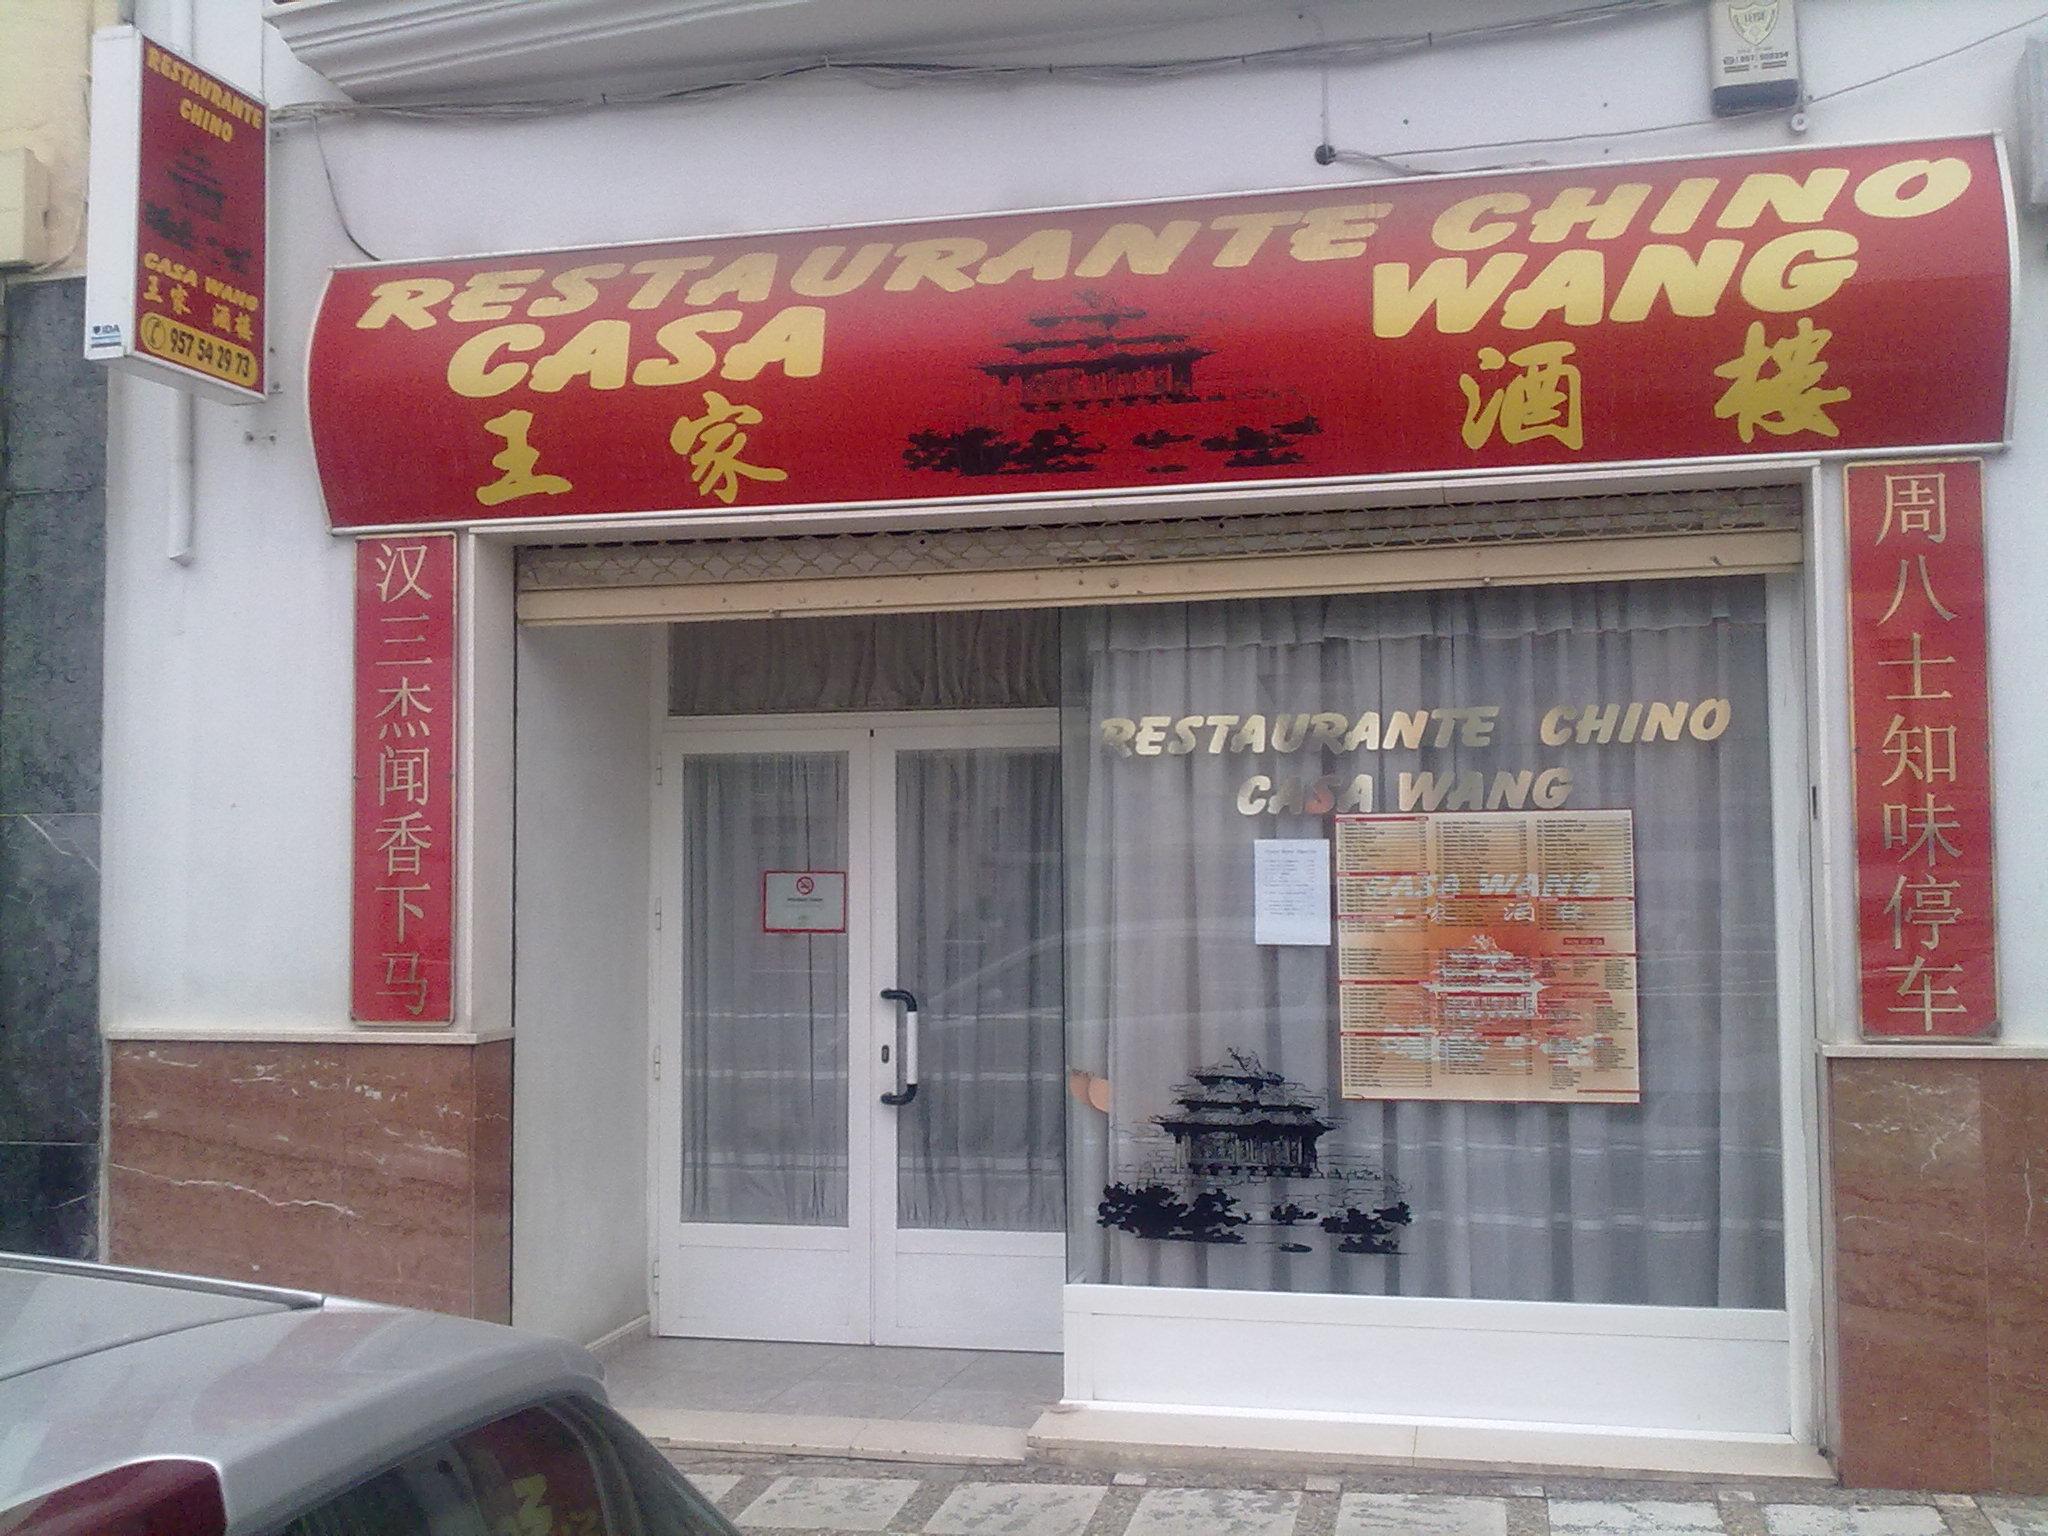 Casa Wang